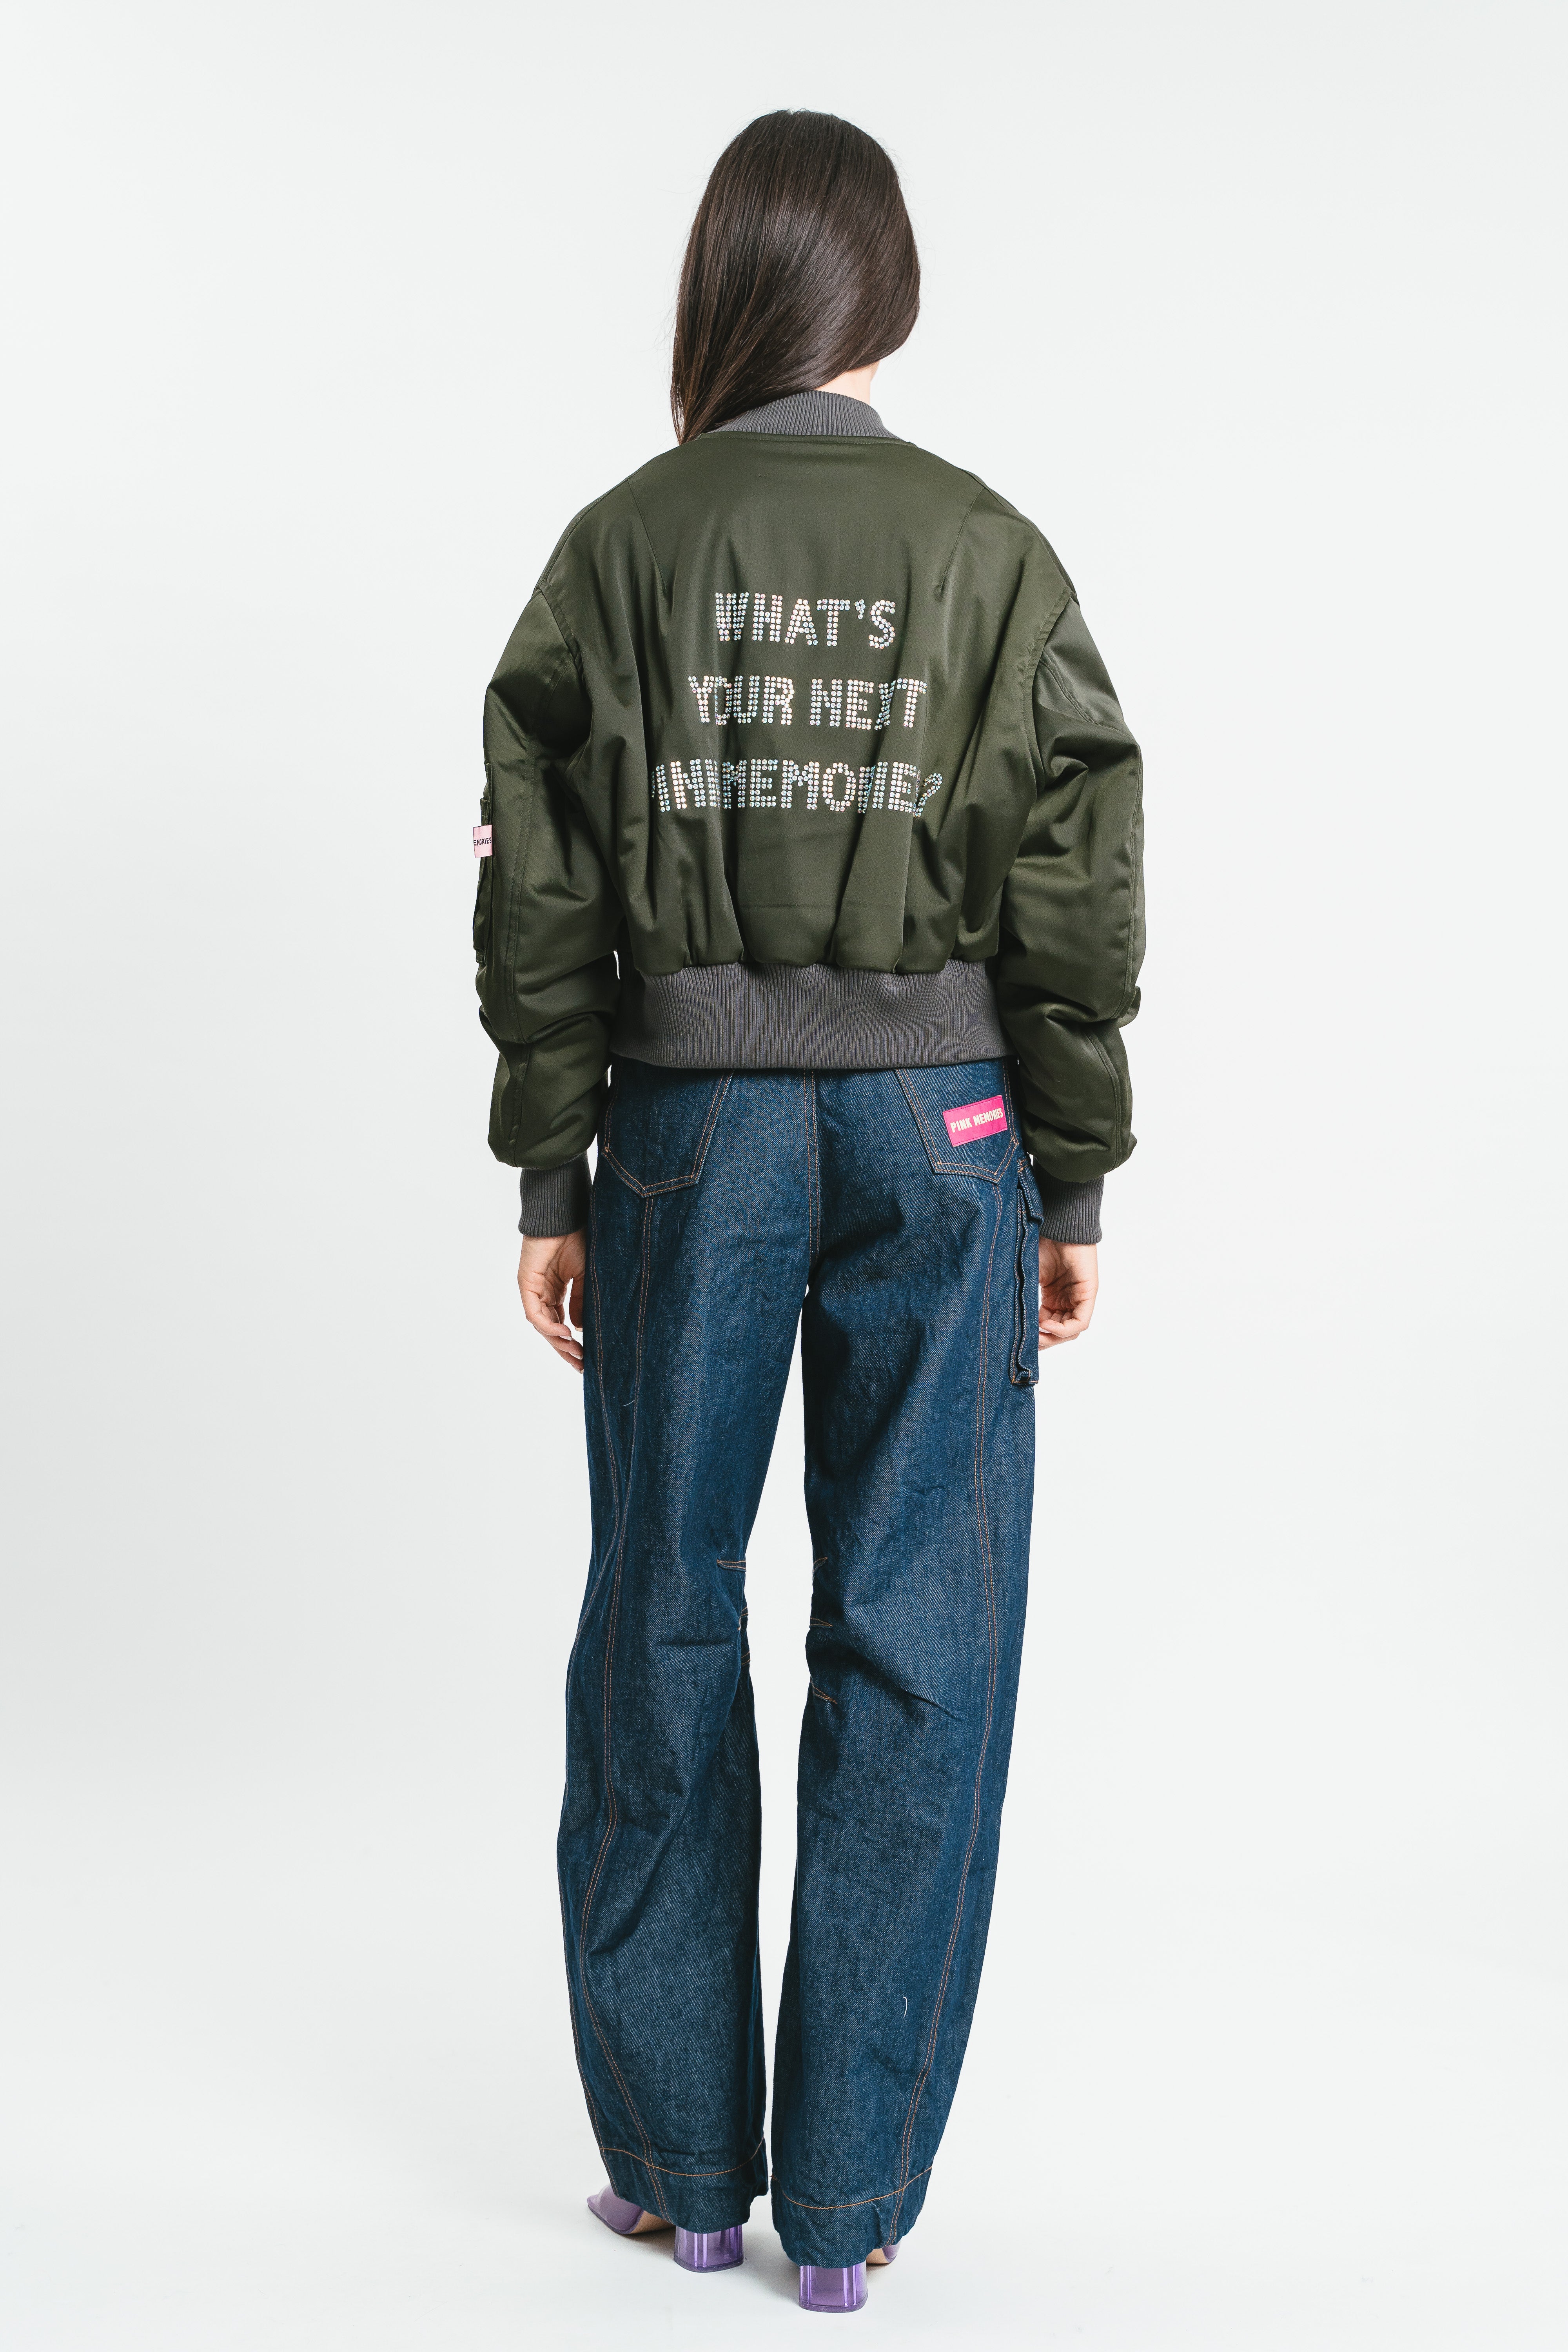 Short bomber jacket with rhinestone writing